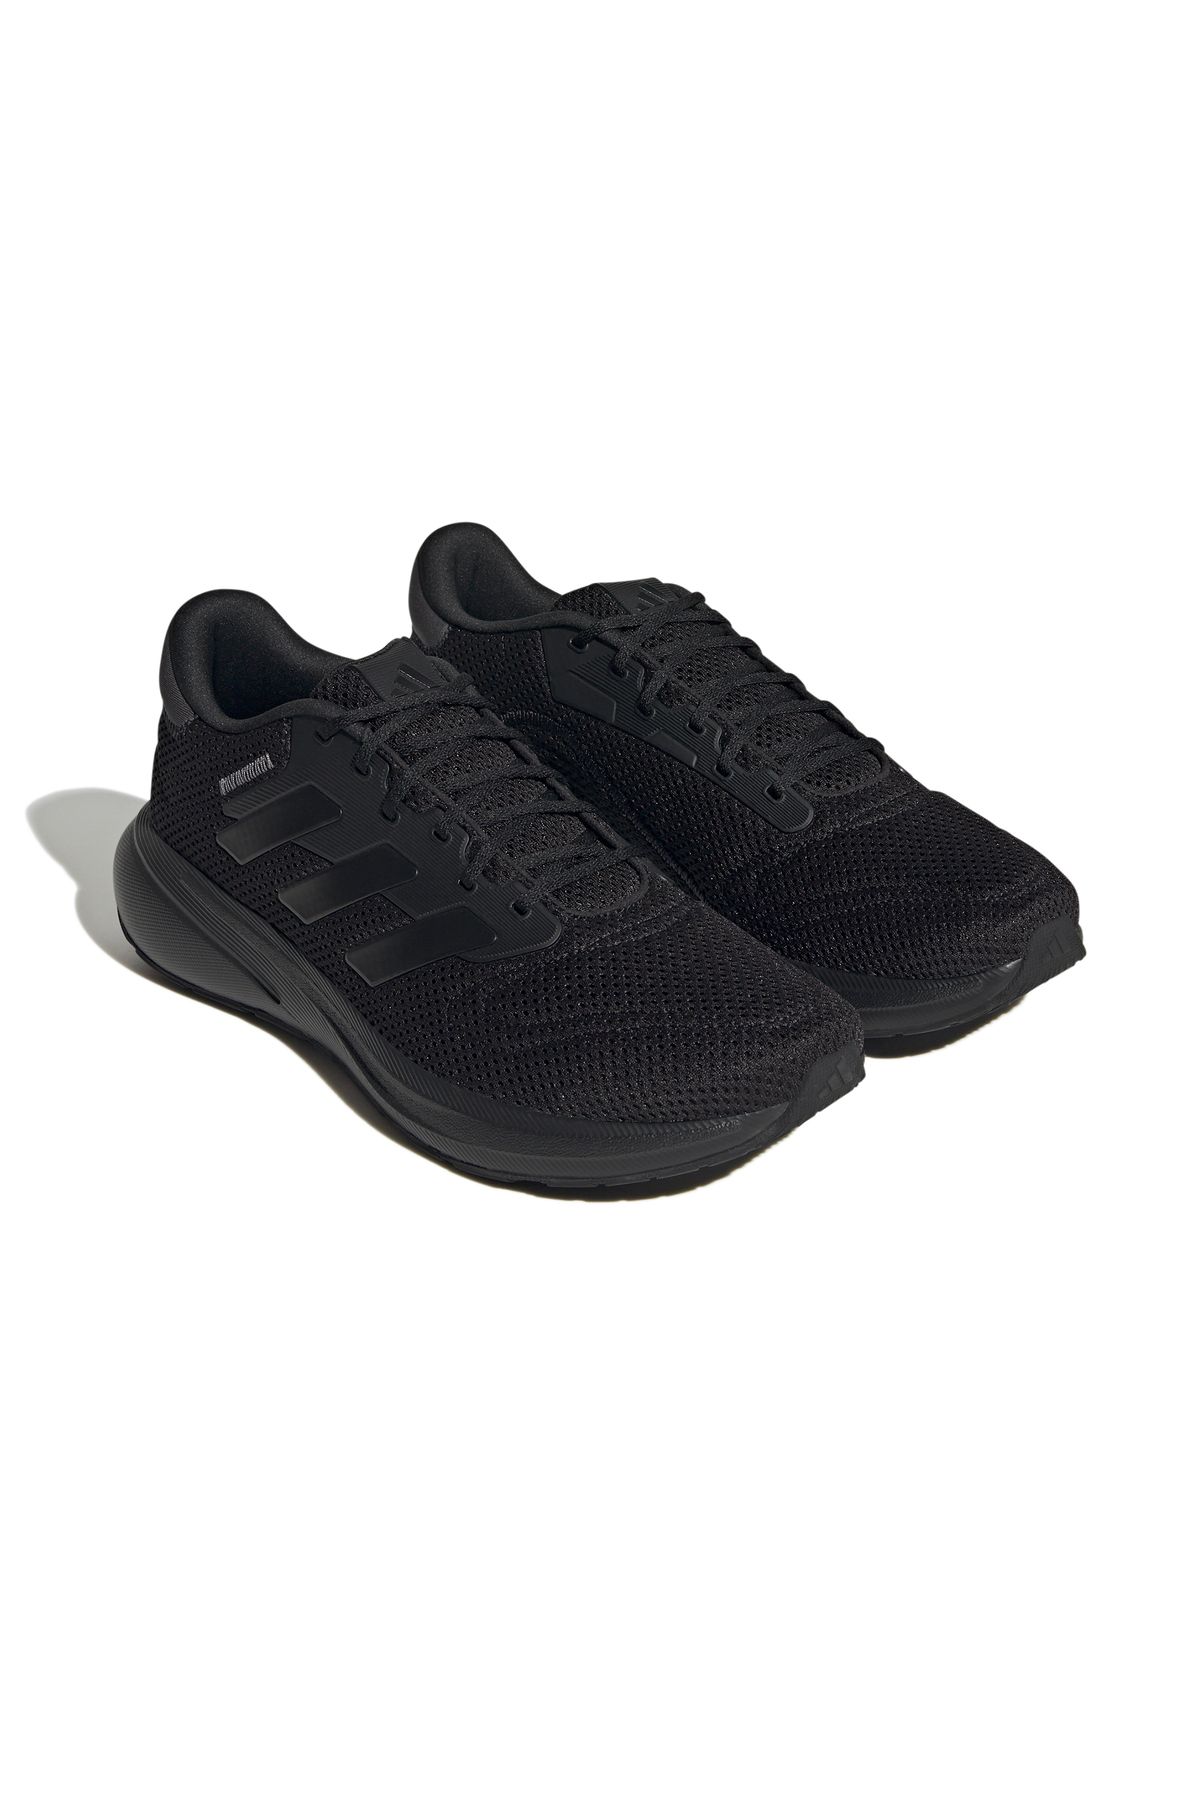 adidas Response Runner U Erkek Koşu Ayakkabısı IG0736 Siyah